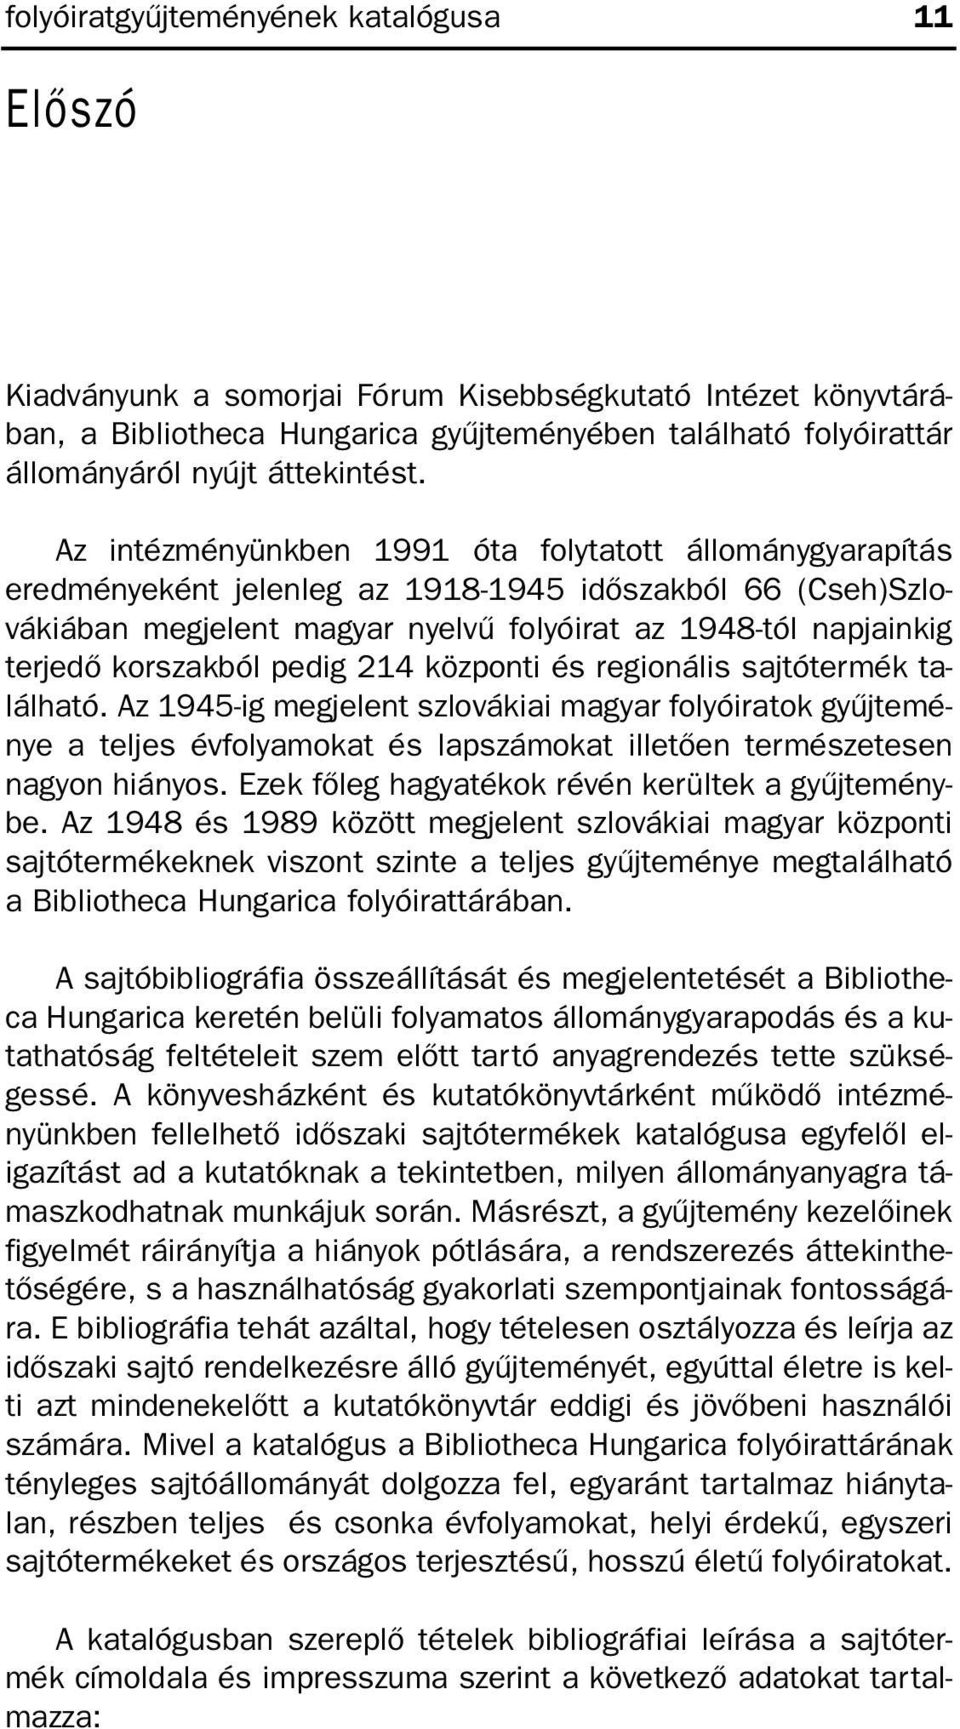 Az intézményünkben 1991 óta folytatott állománygyarapítás eredményeként jelenleg az 1918-1945 idõszakból 66 (Cseh)Szlovákiában megjelent magyar nyelvû folyóirat az 1948-tól napjainkig terjedõ